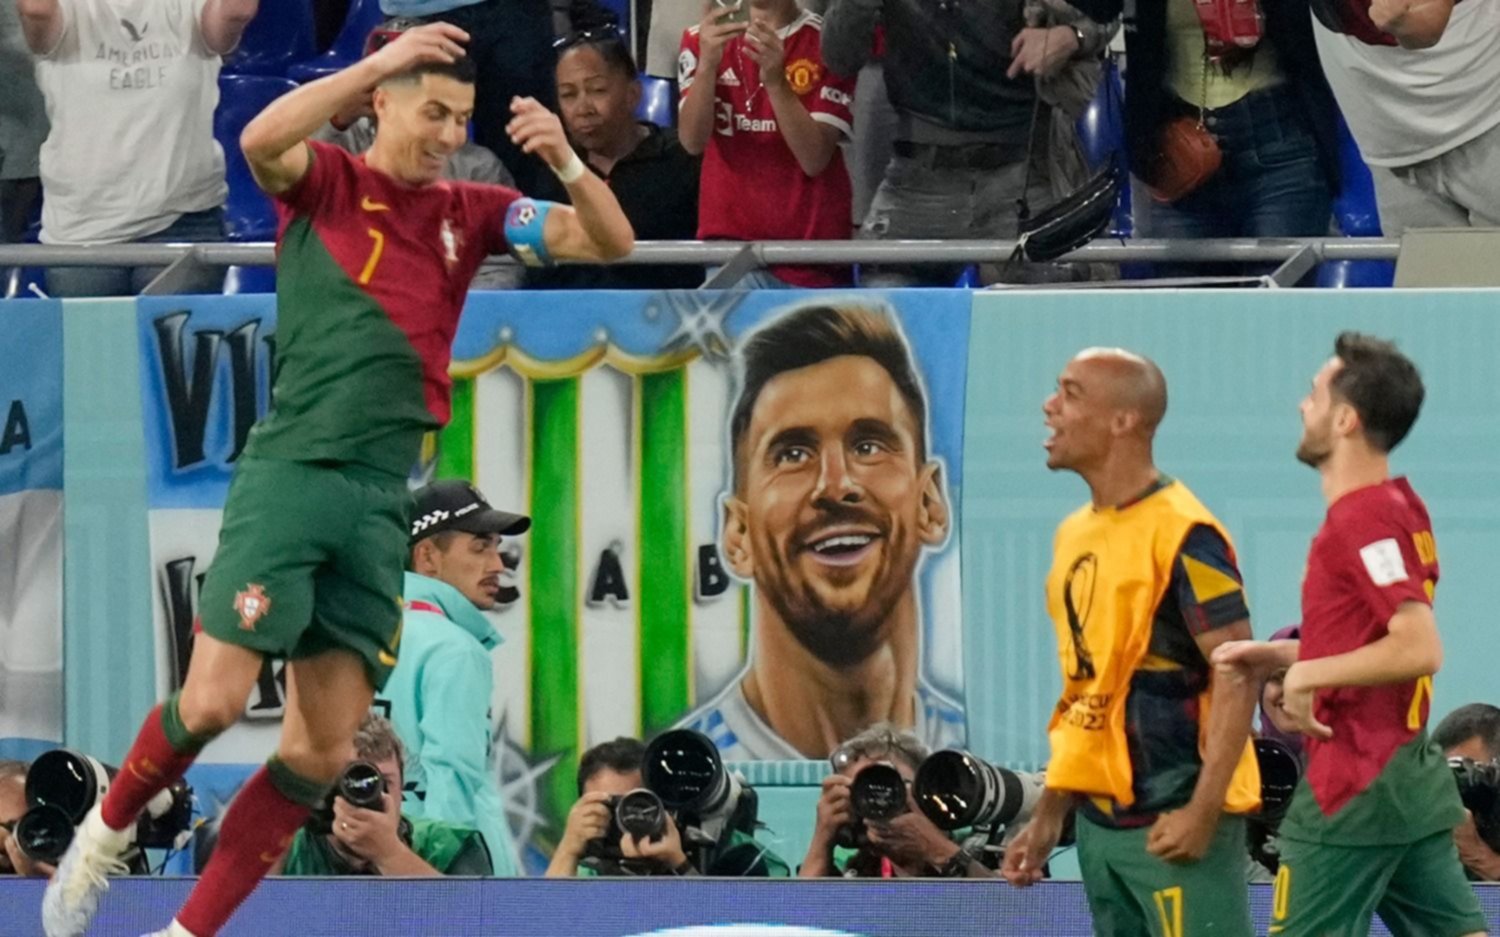 El "trapo" de Messi que apareció en el festejo de Cristiano Ronaldo dio mucho que hablar